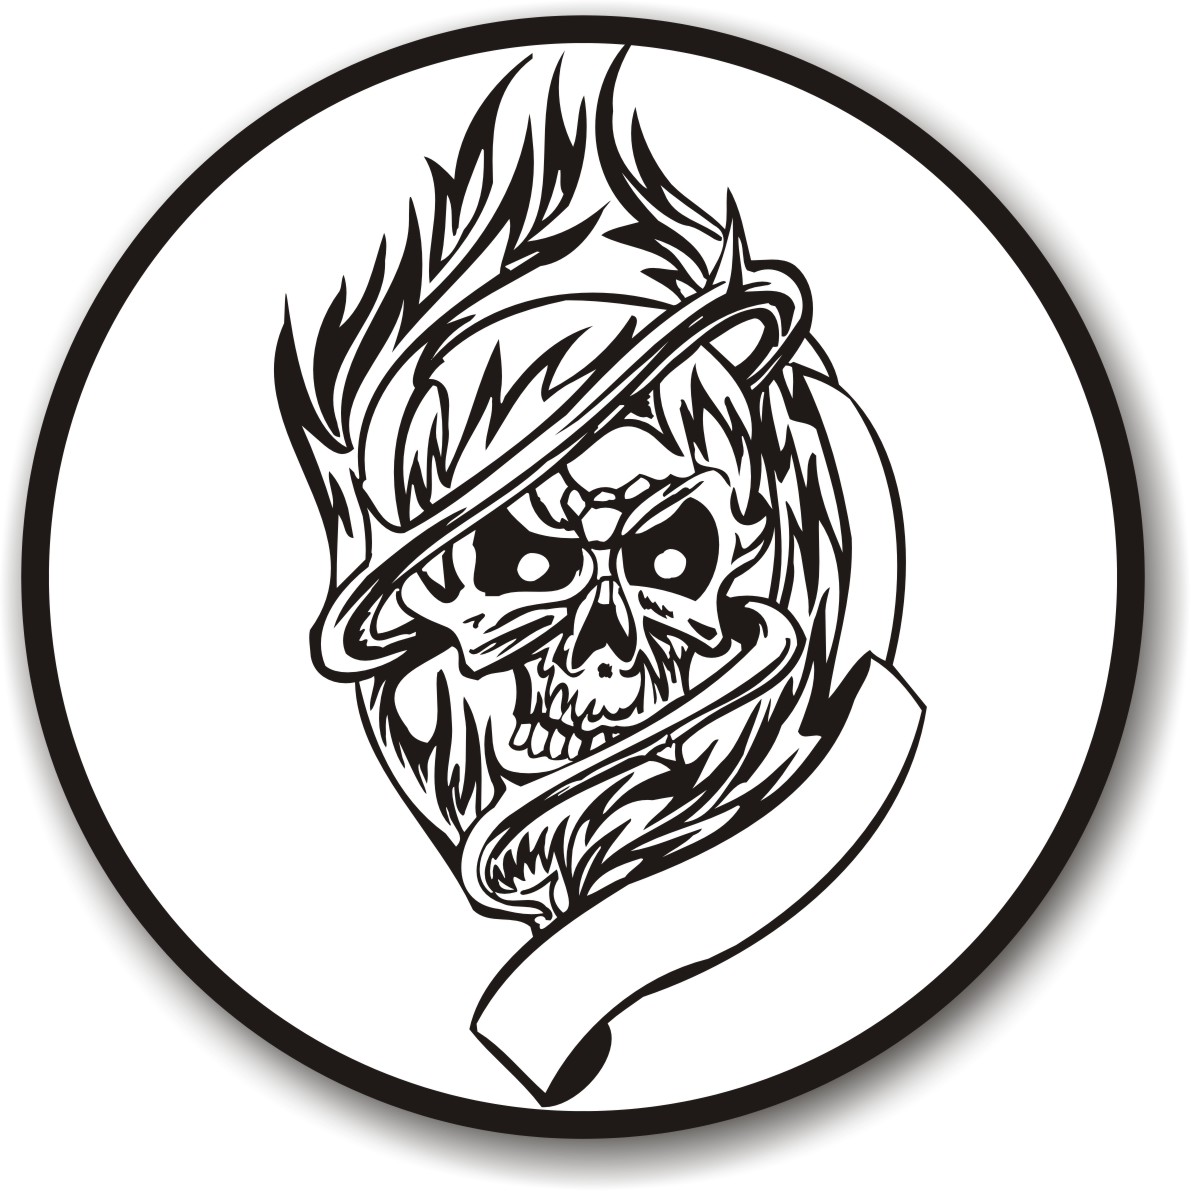 skull vector logo